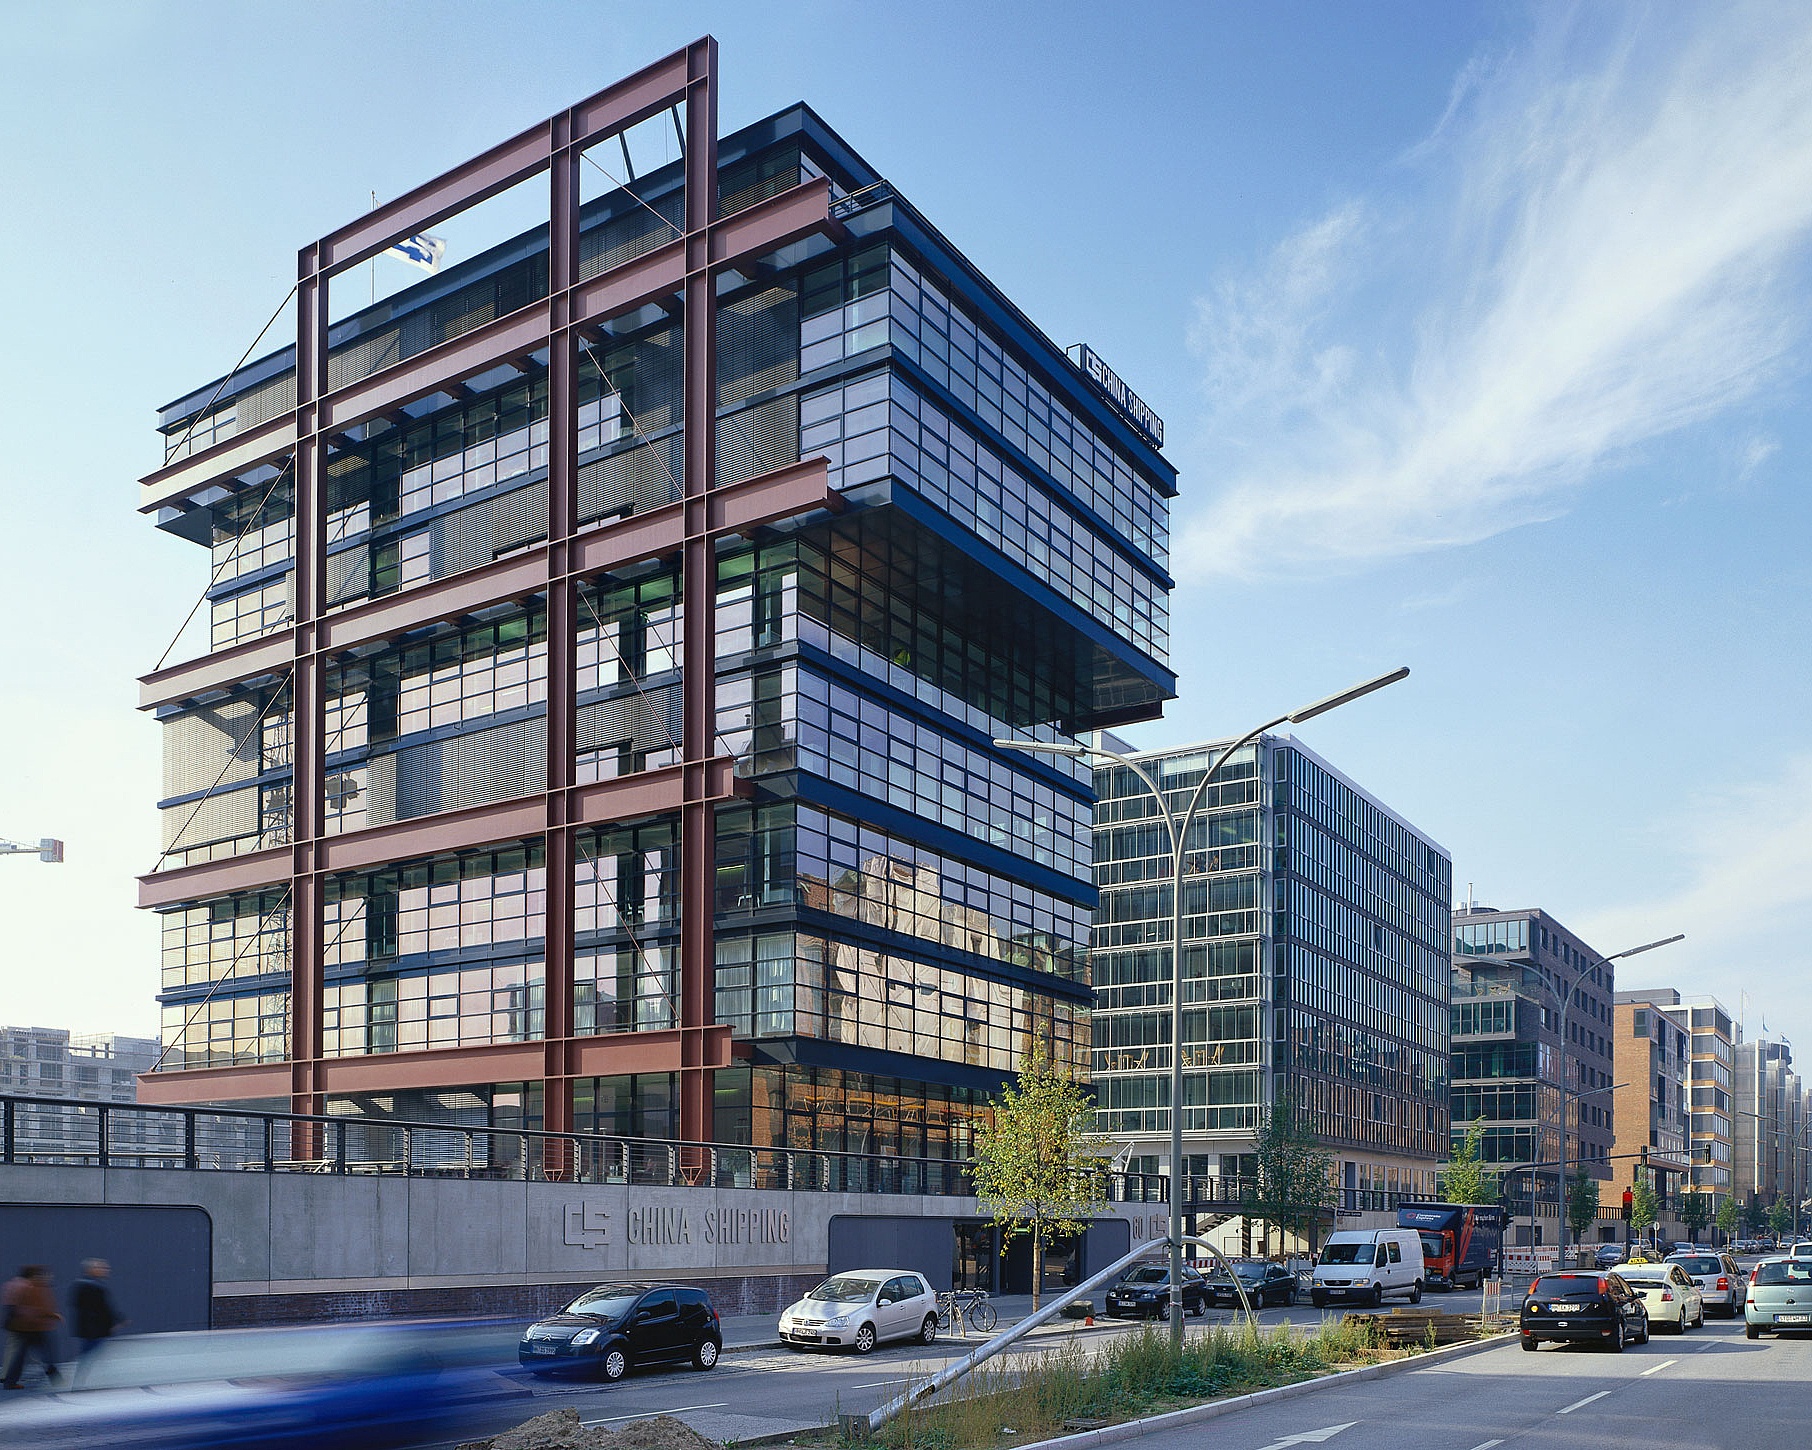 Bürogebäude China Shipping Hamburg - Referenz von Arbonia